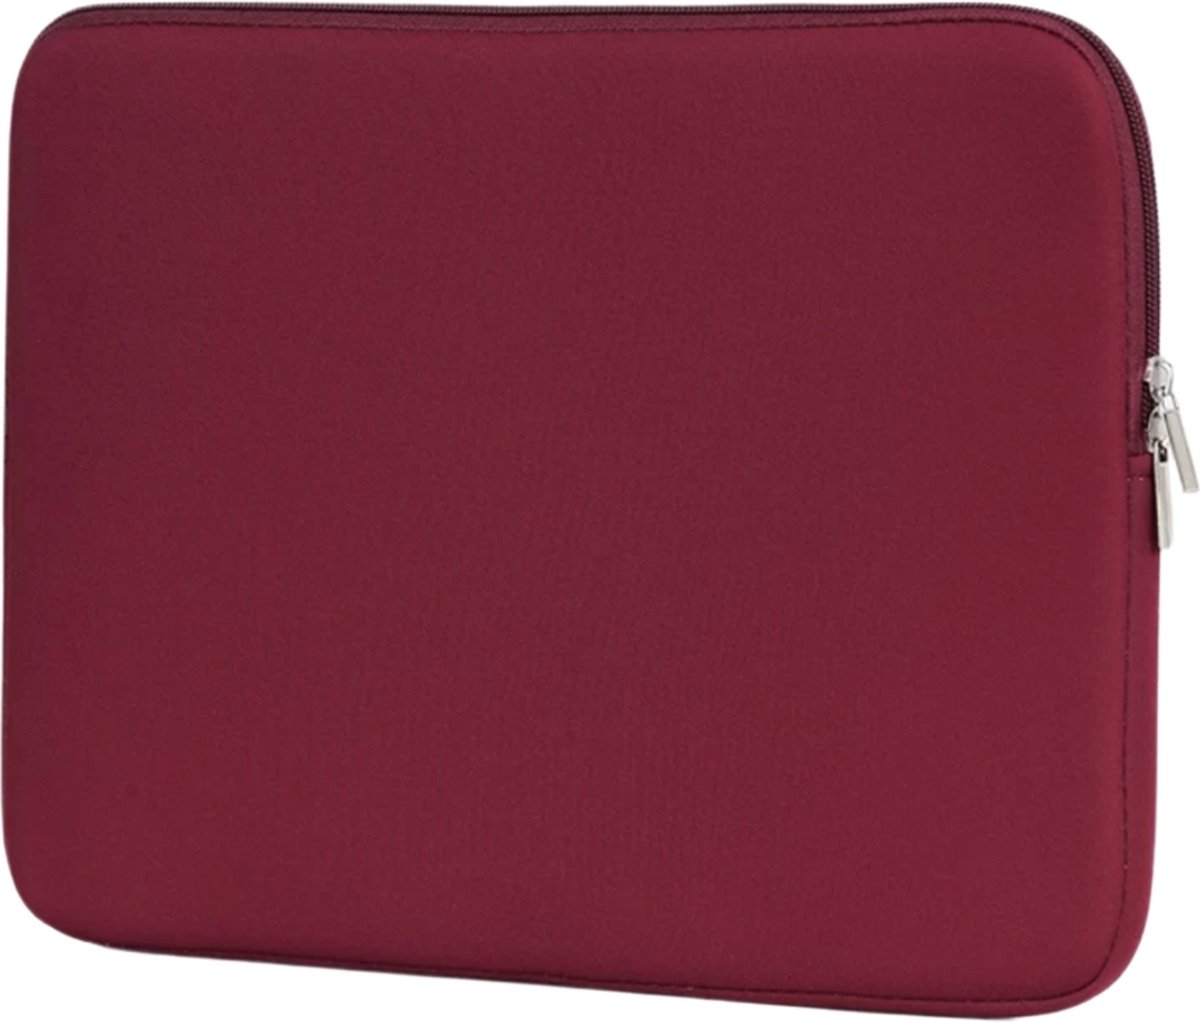 Laptophoes – schokbestendig – 14,6 inch – hoge foam kwaliteit- bordeaux rood- unisex - Dubbele Ritssluiting